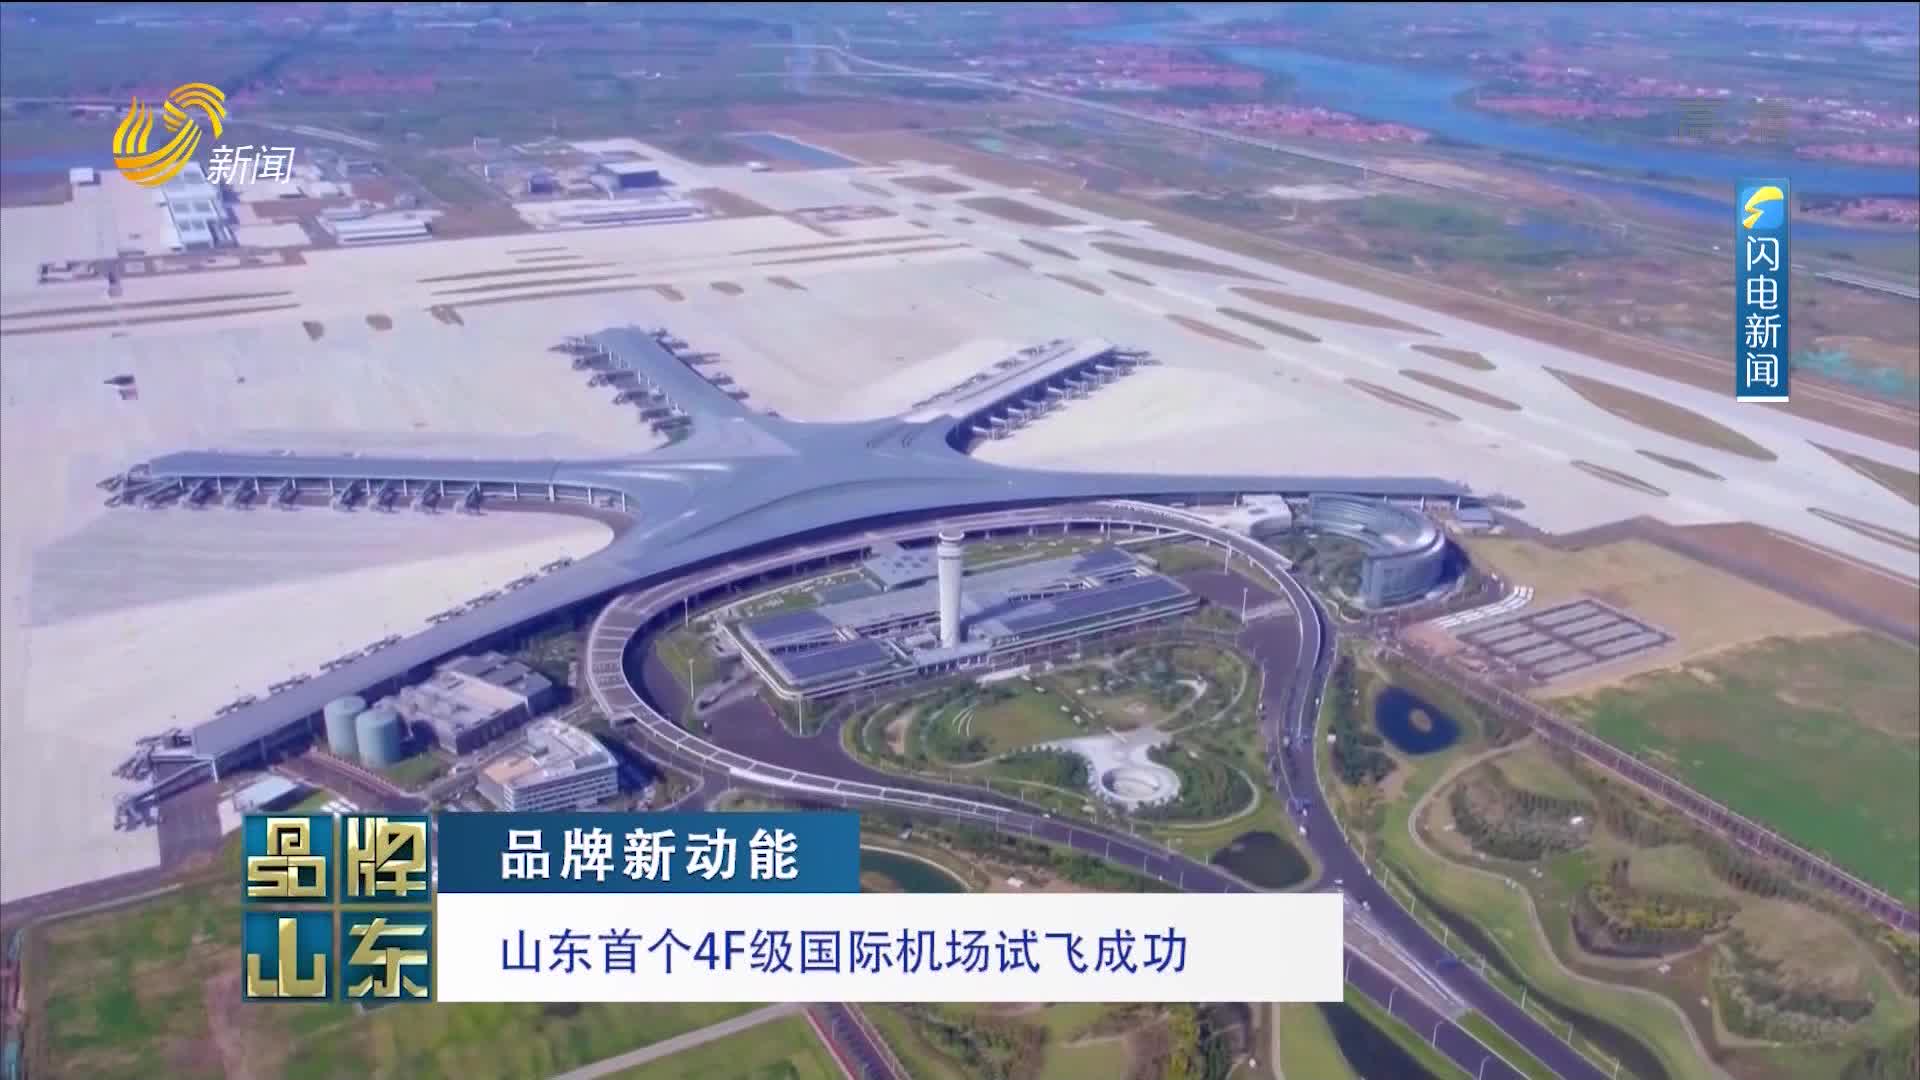 【品牌新动能】山东首个4F级国际机场试飞成功